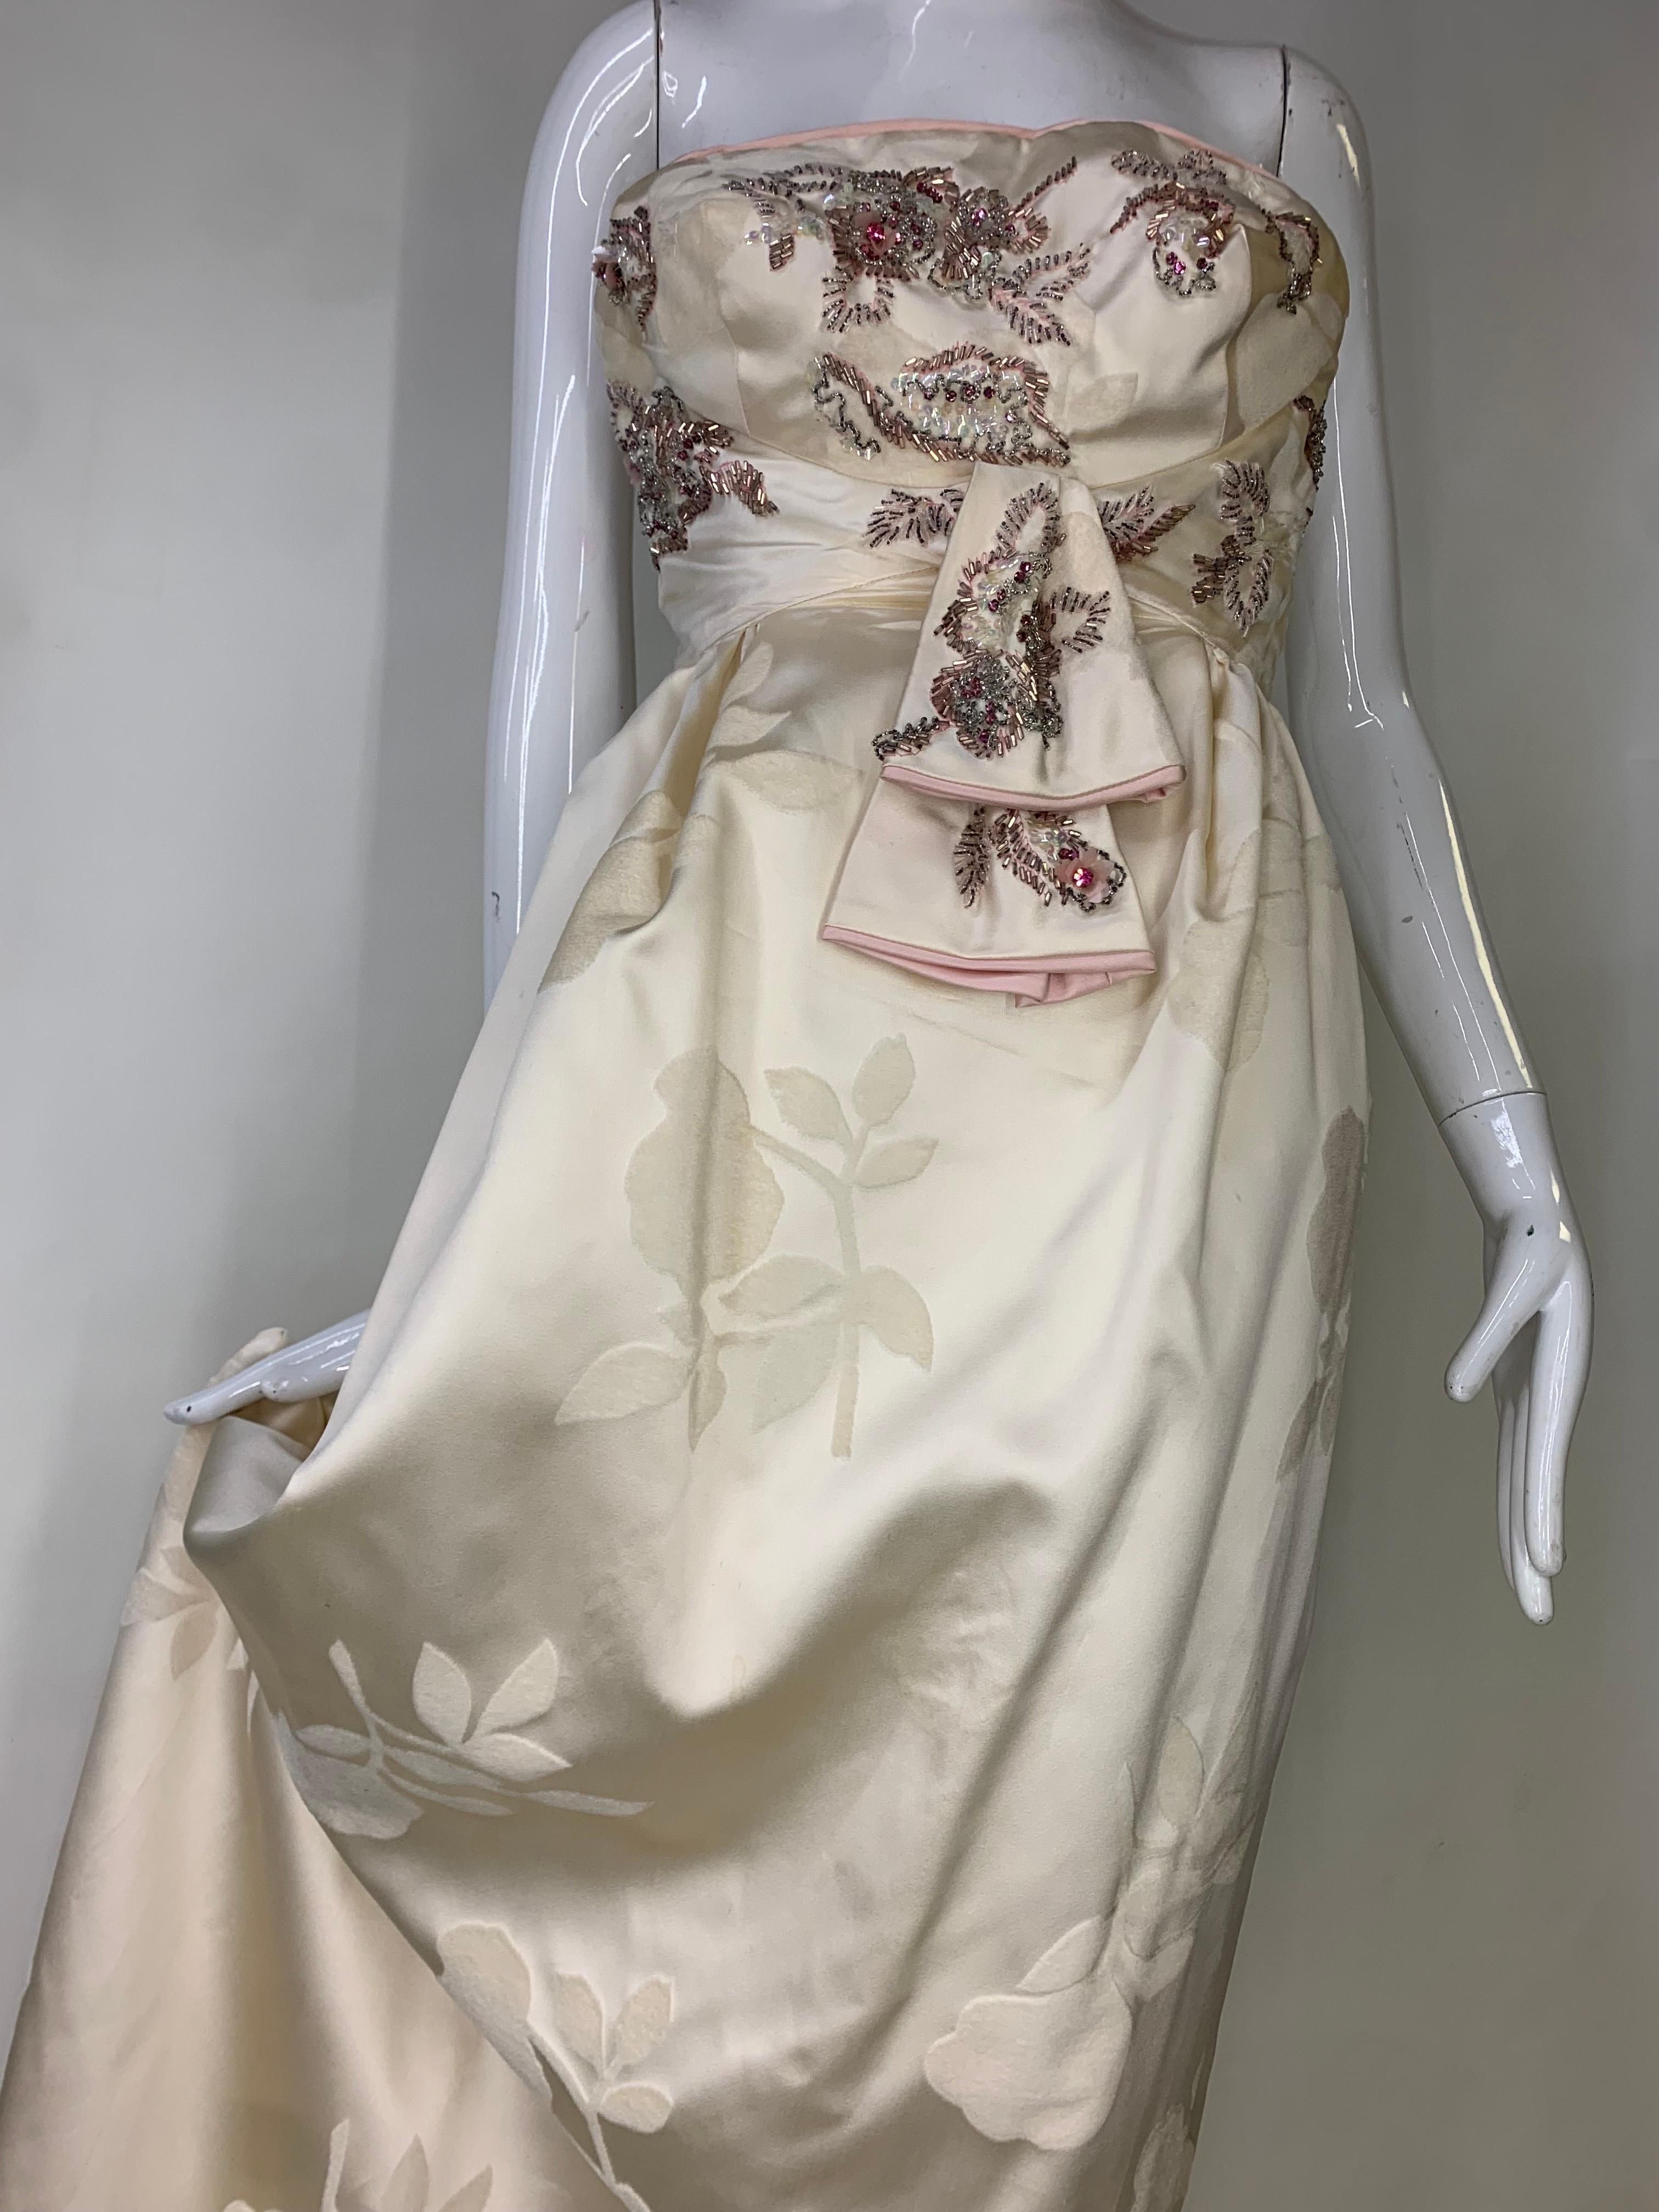 Robe bustier en soie crème floquée de perles, originale d'Helena Barbieri des années 1950 : Ce modèle original et sensuel présente un corsage à motif floral perlé et orné de bijoux dans un style subtil et séduisant, accentué par un passepoil rose.